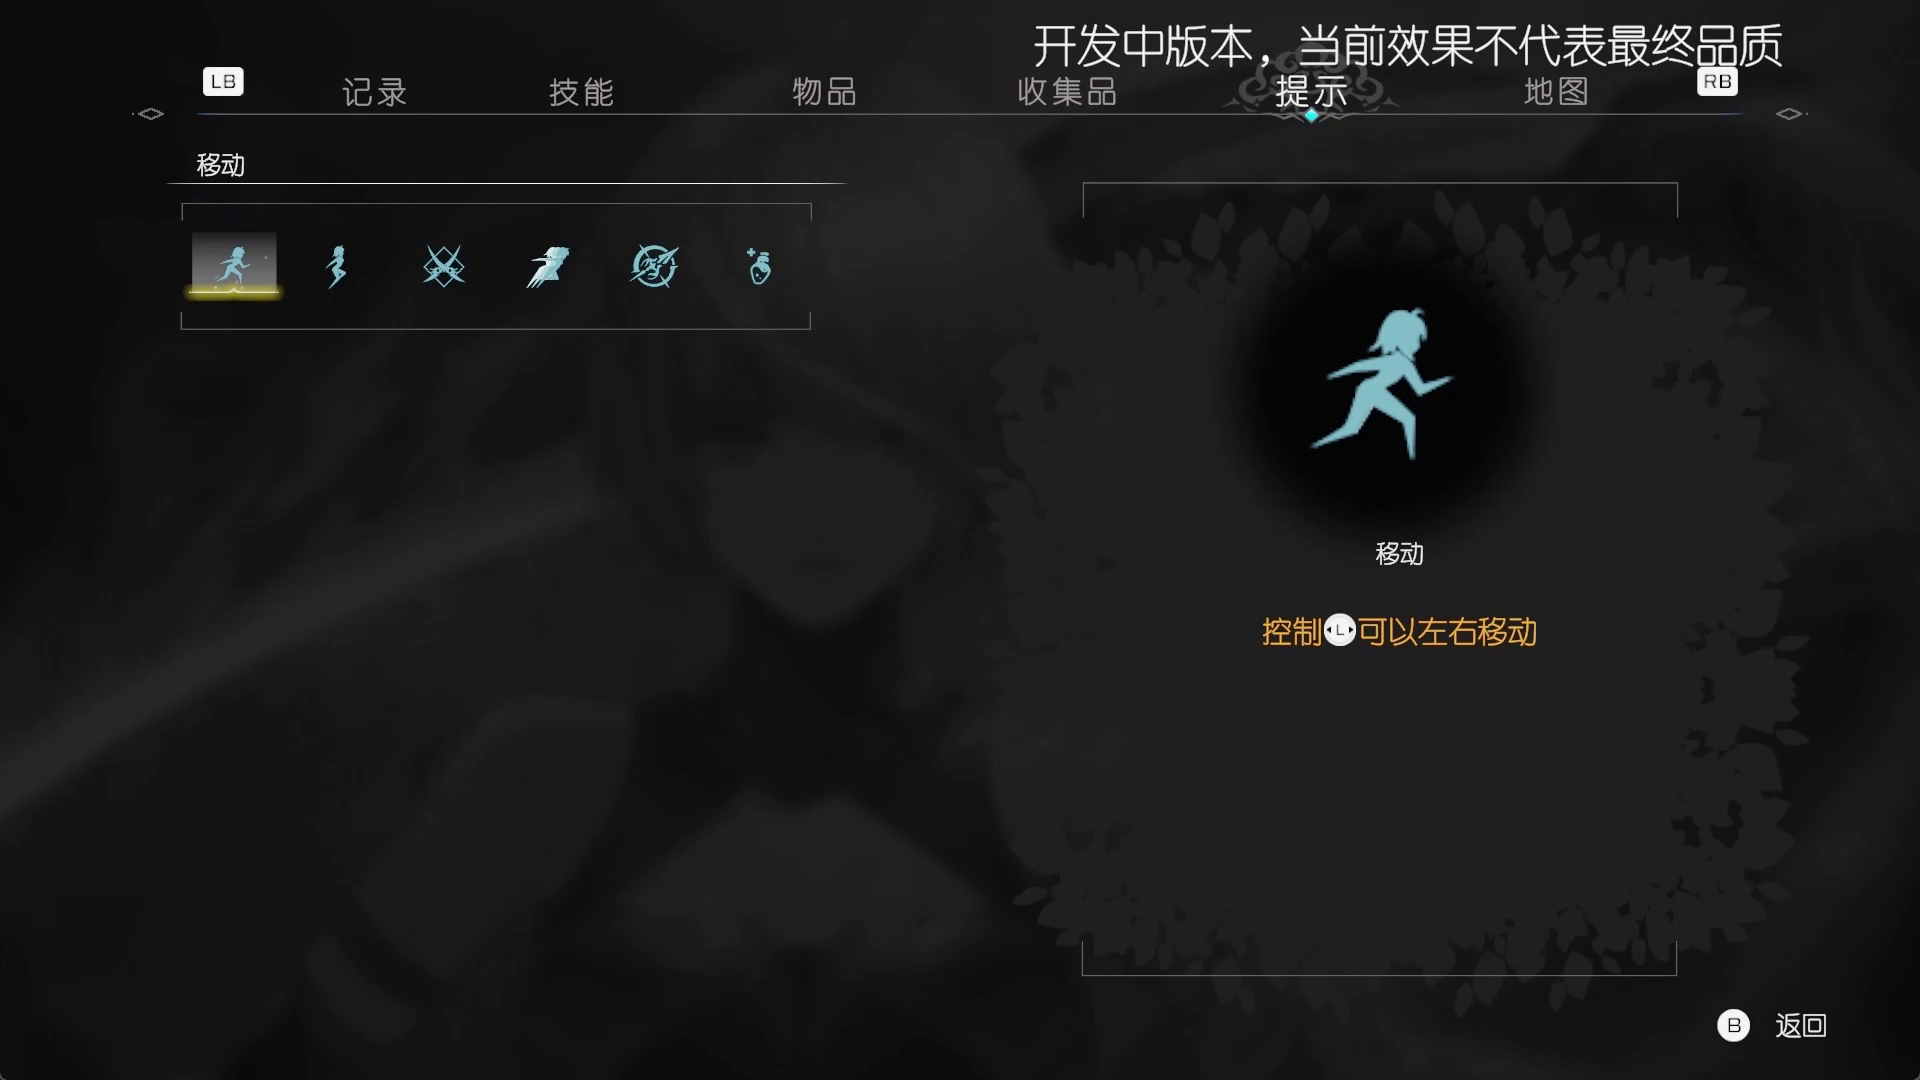 横板动作游戏《觉醒异刃》发布中文预告截图